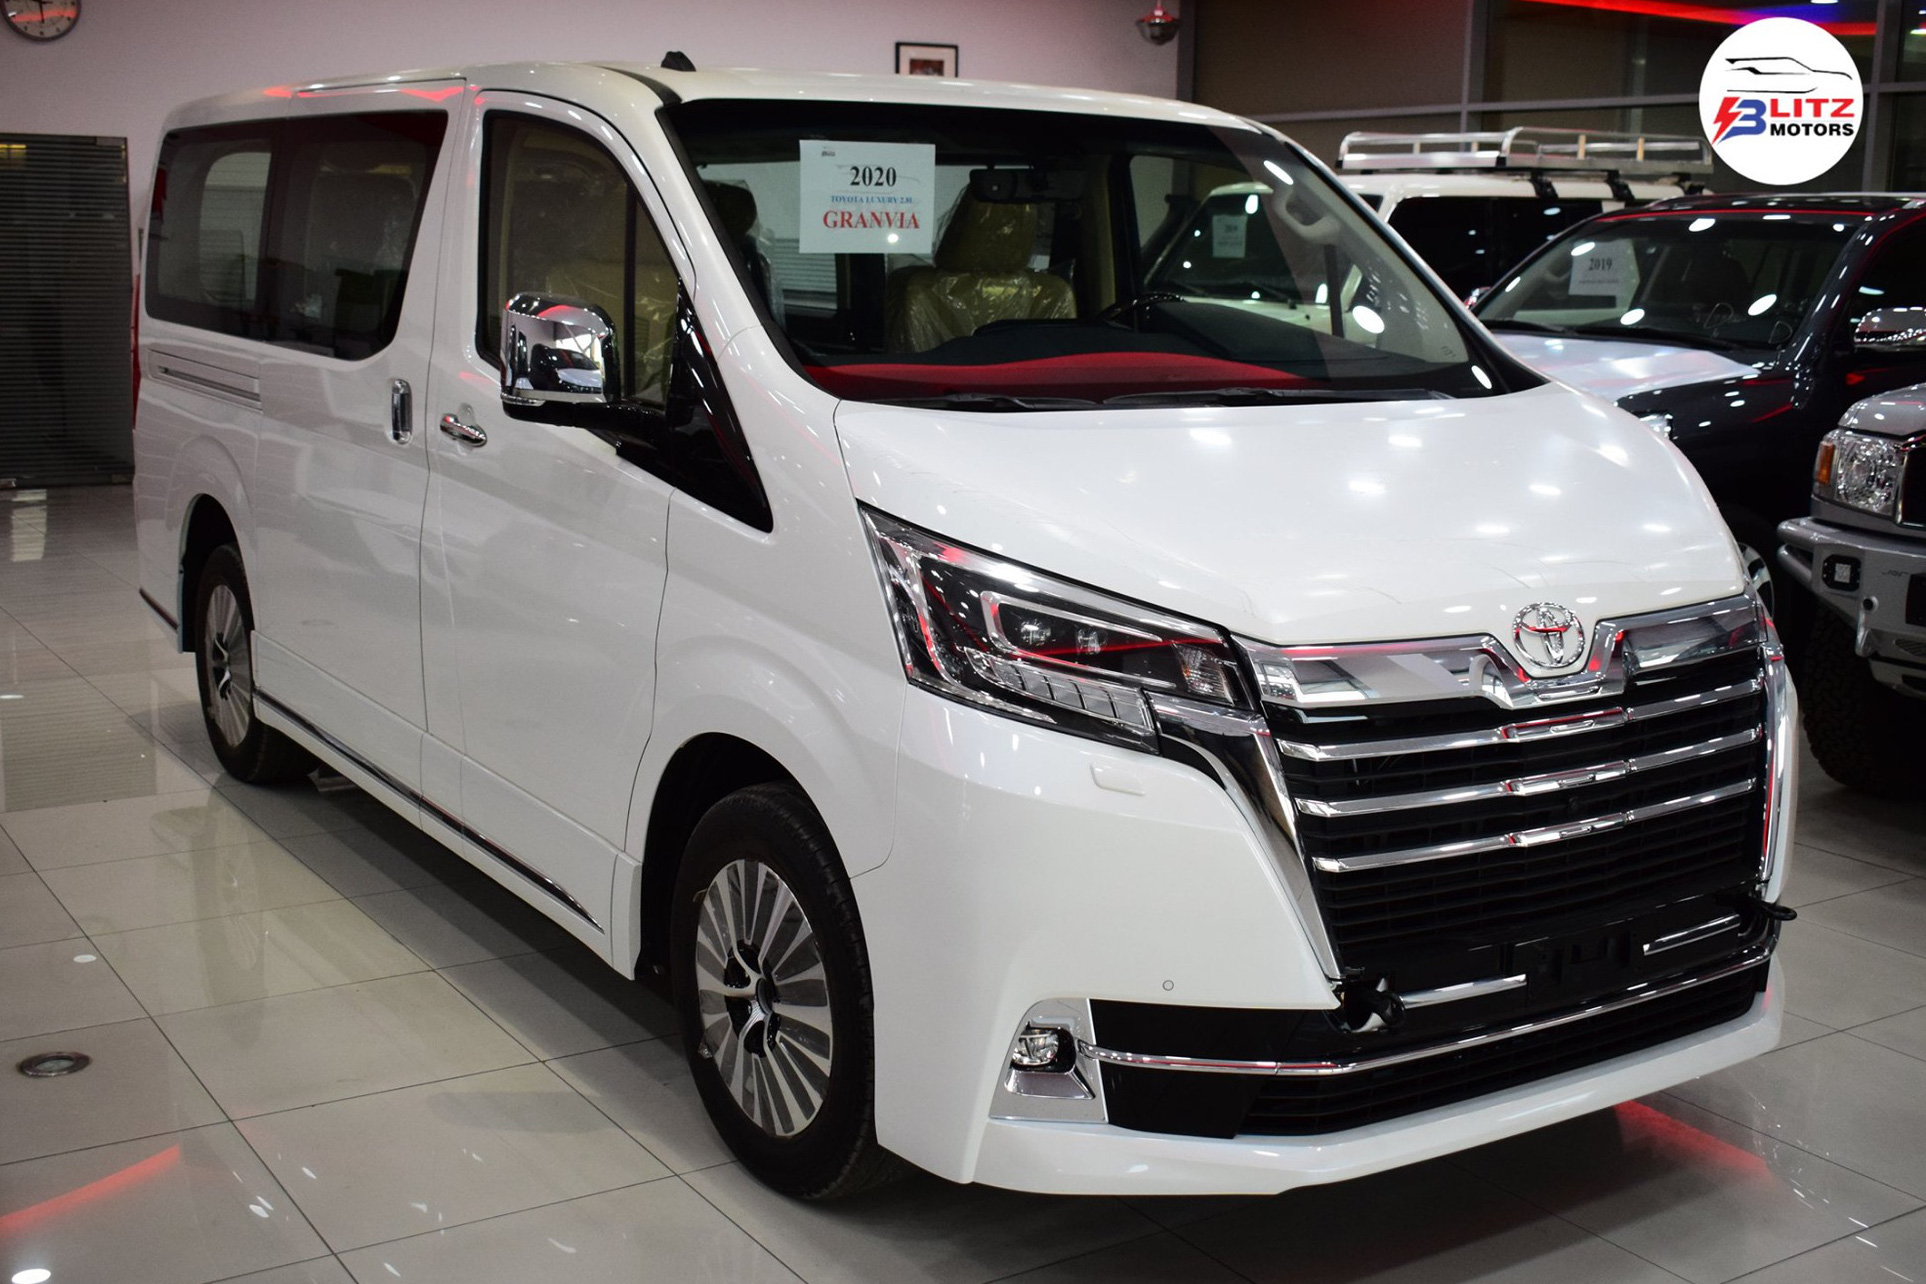 Toyota Granvia 2020 giá 3,072 tỷ đồng tại Việt Nam: MPV thương gia dự kiến ra mắt trong tháng 5